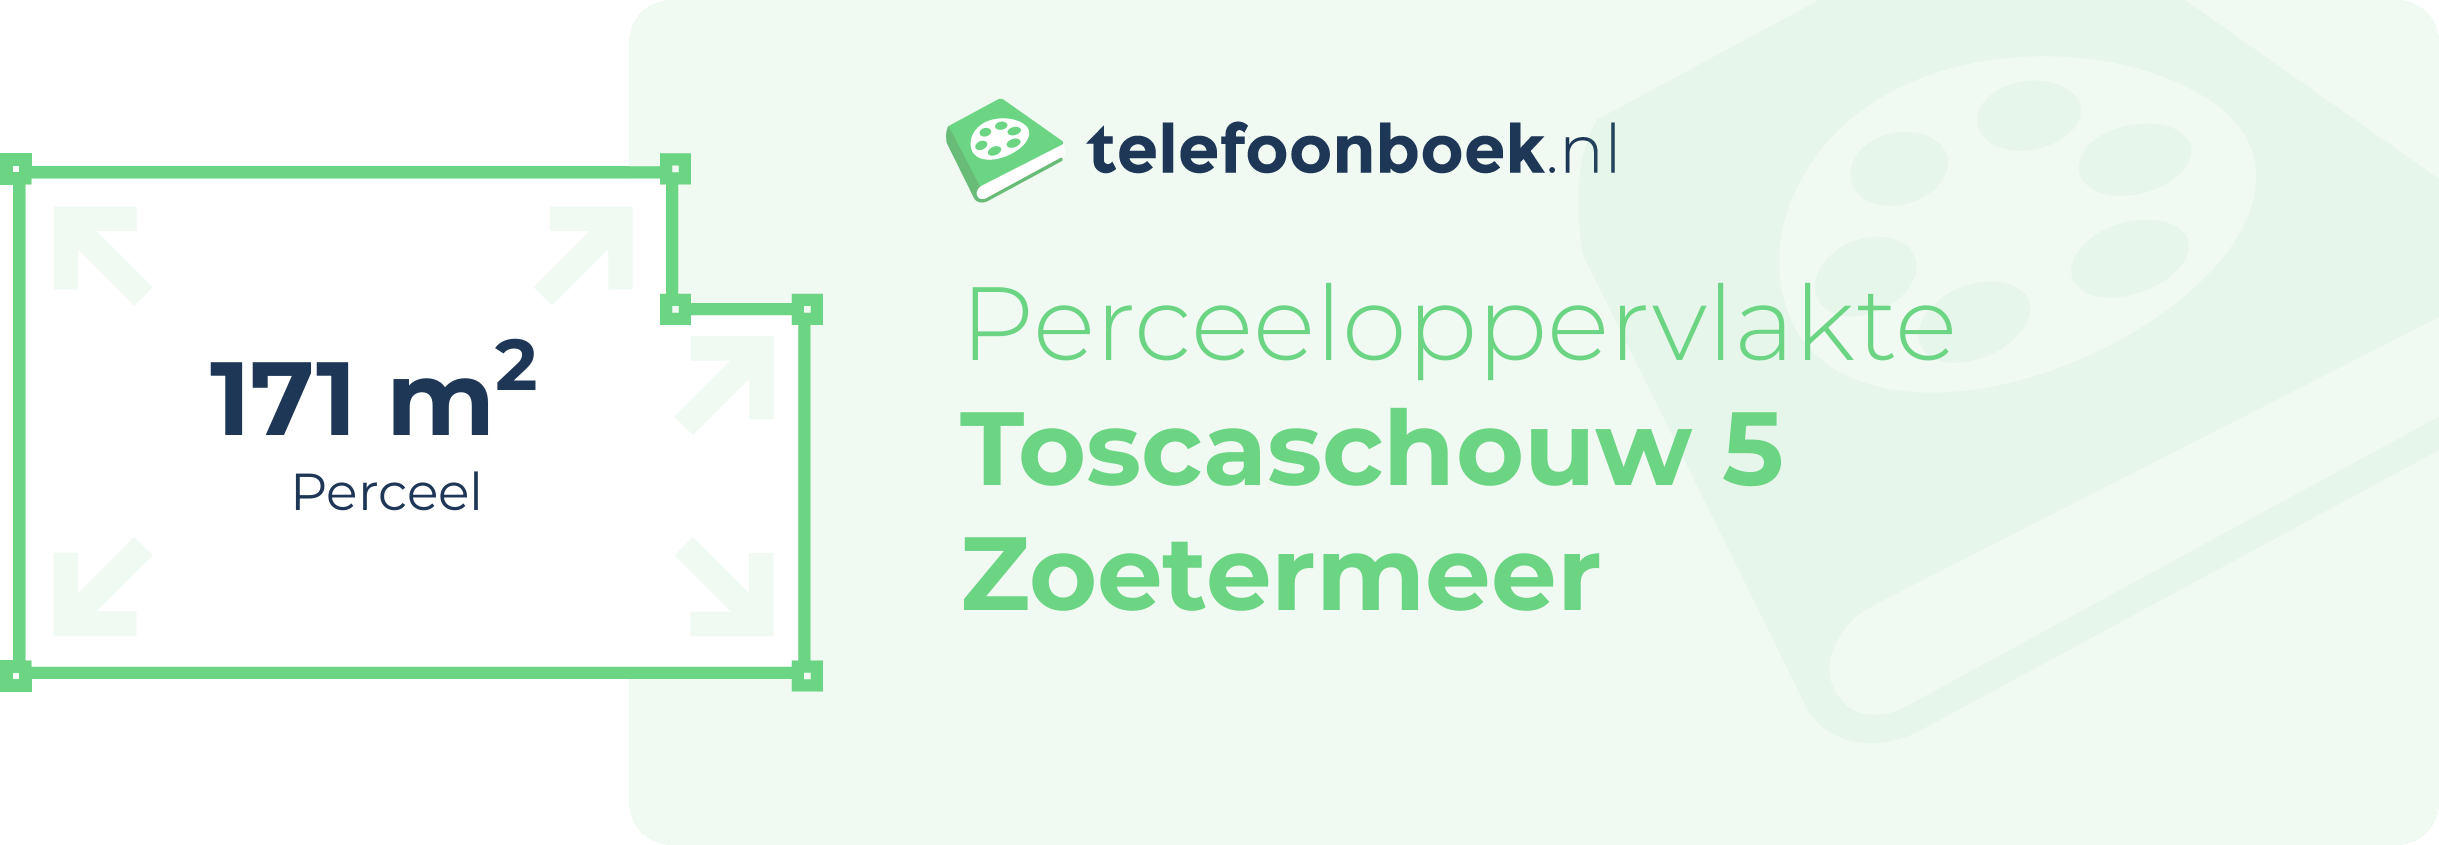 Perceeloppervlakte Toscaschouw 5 Zoetermeer